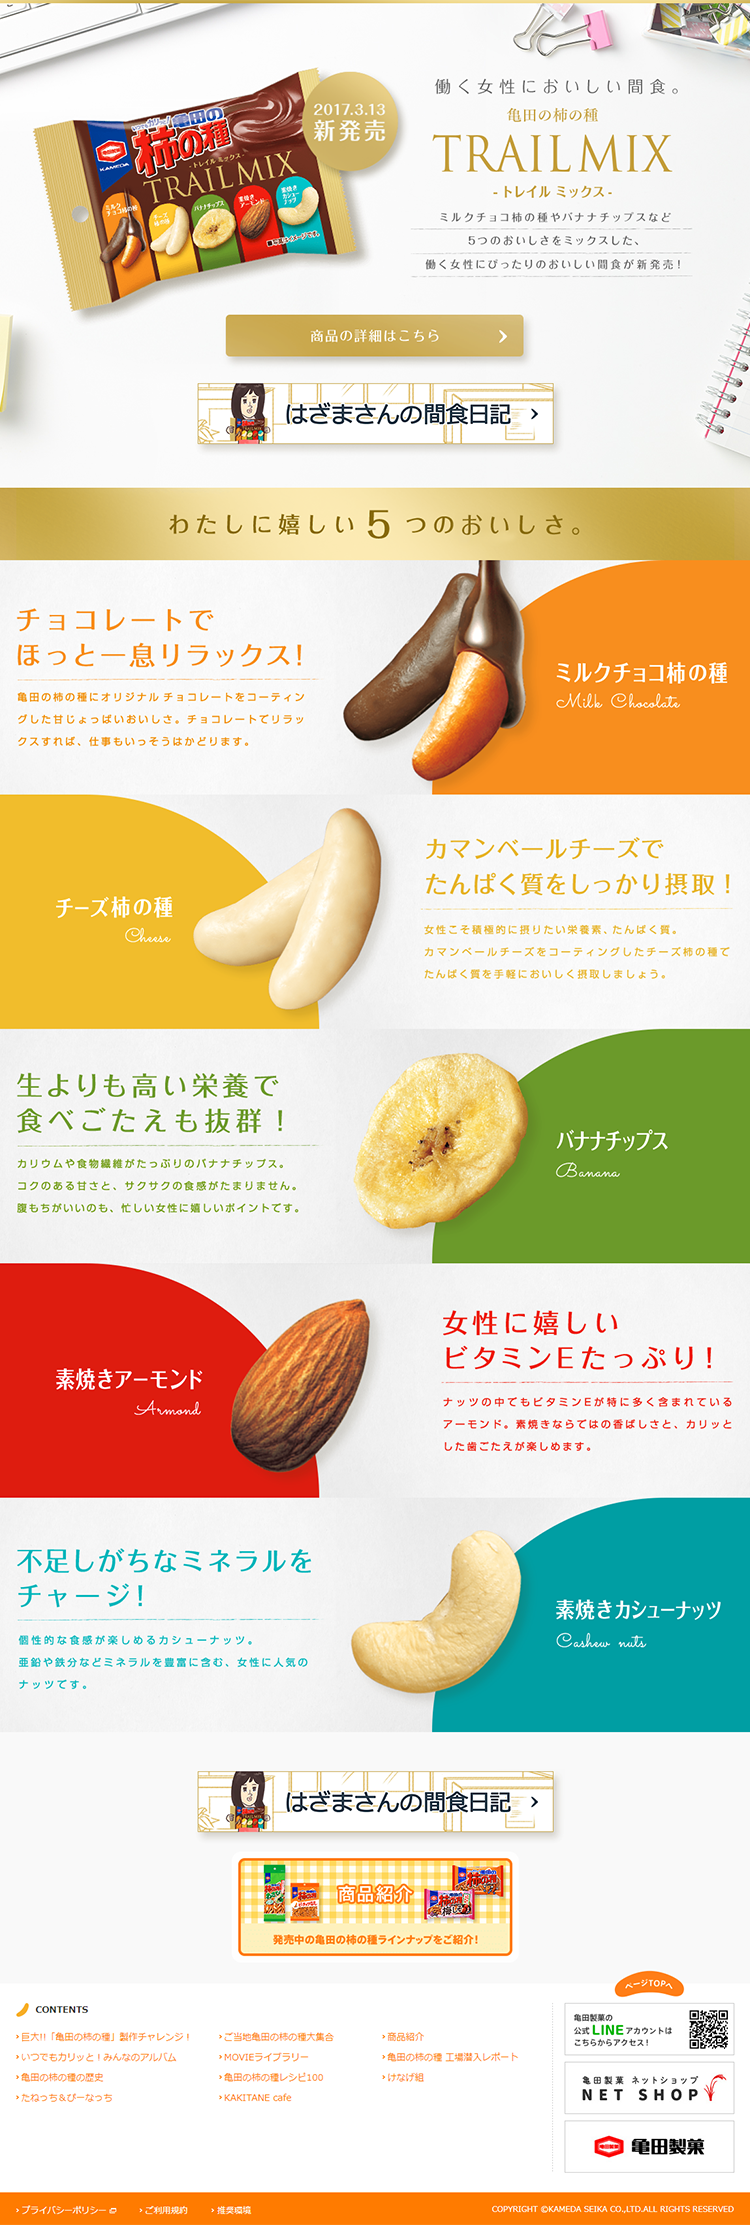 亀田の柿の種『TRAIL MIX』_pc_1